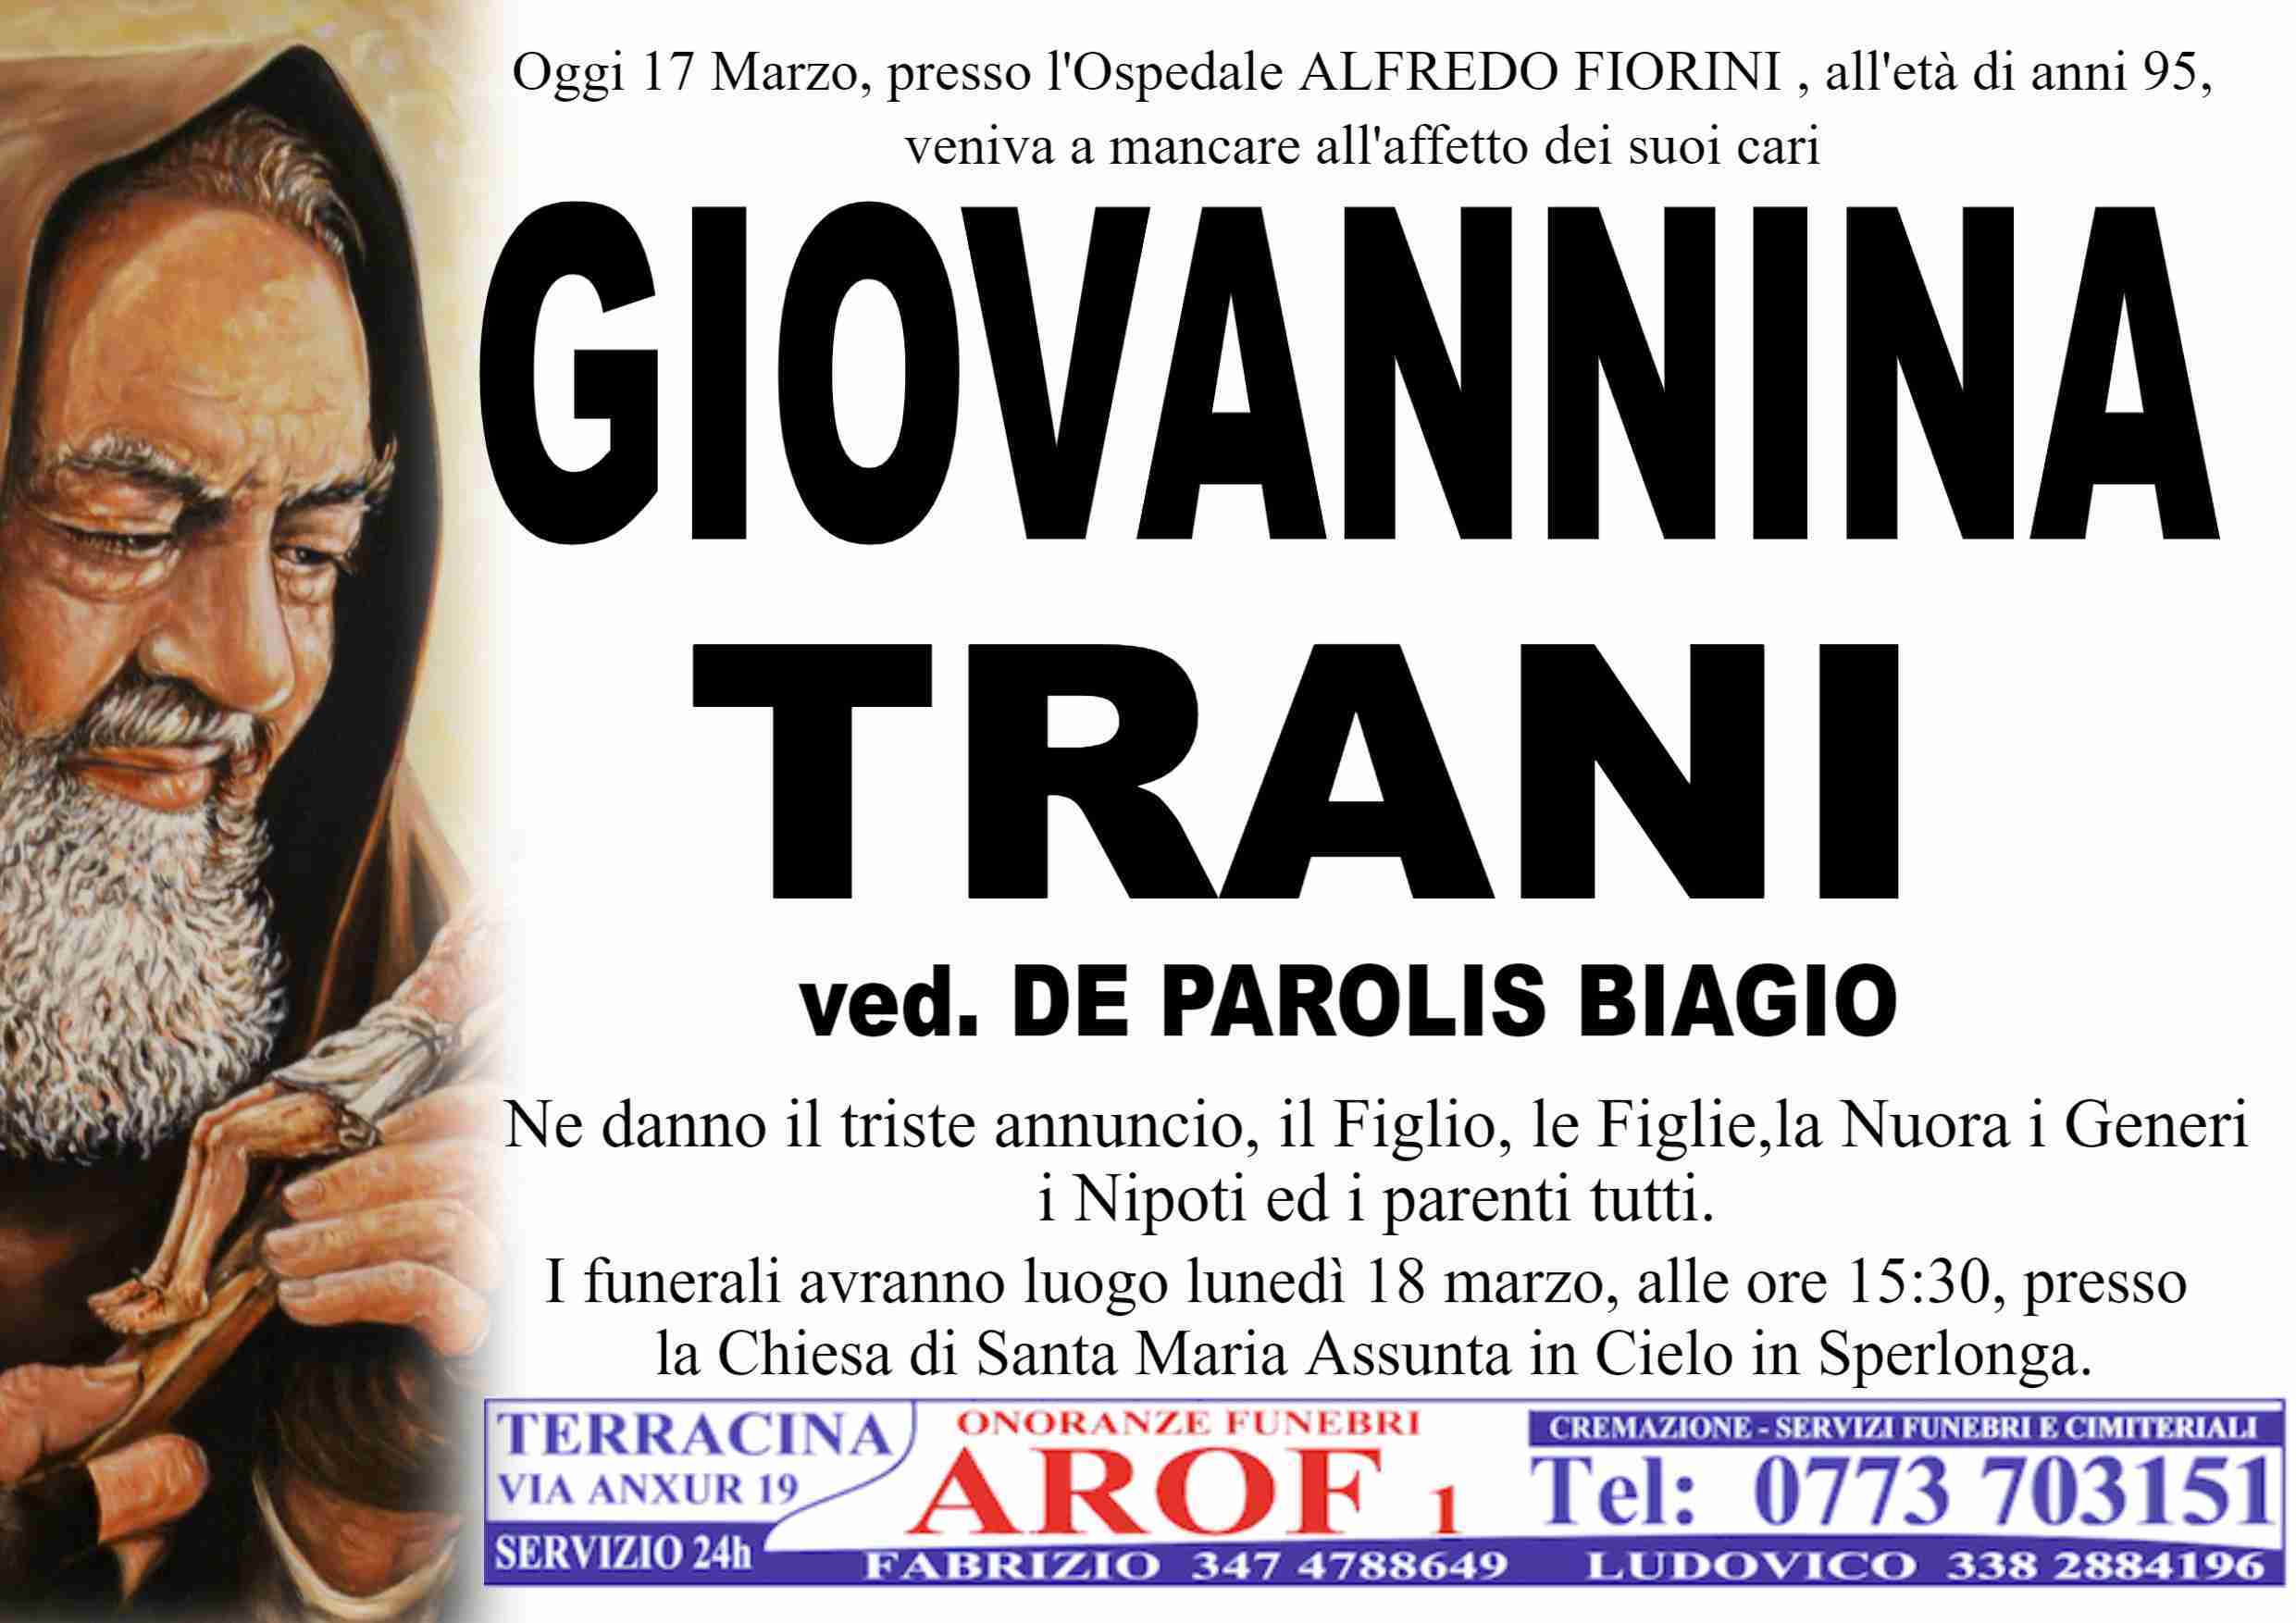 Giovannina Trani